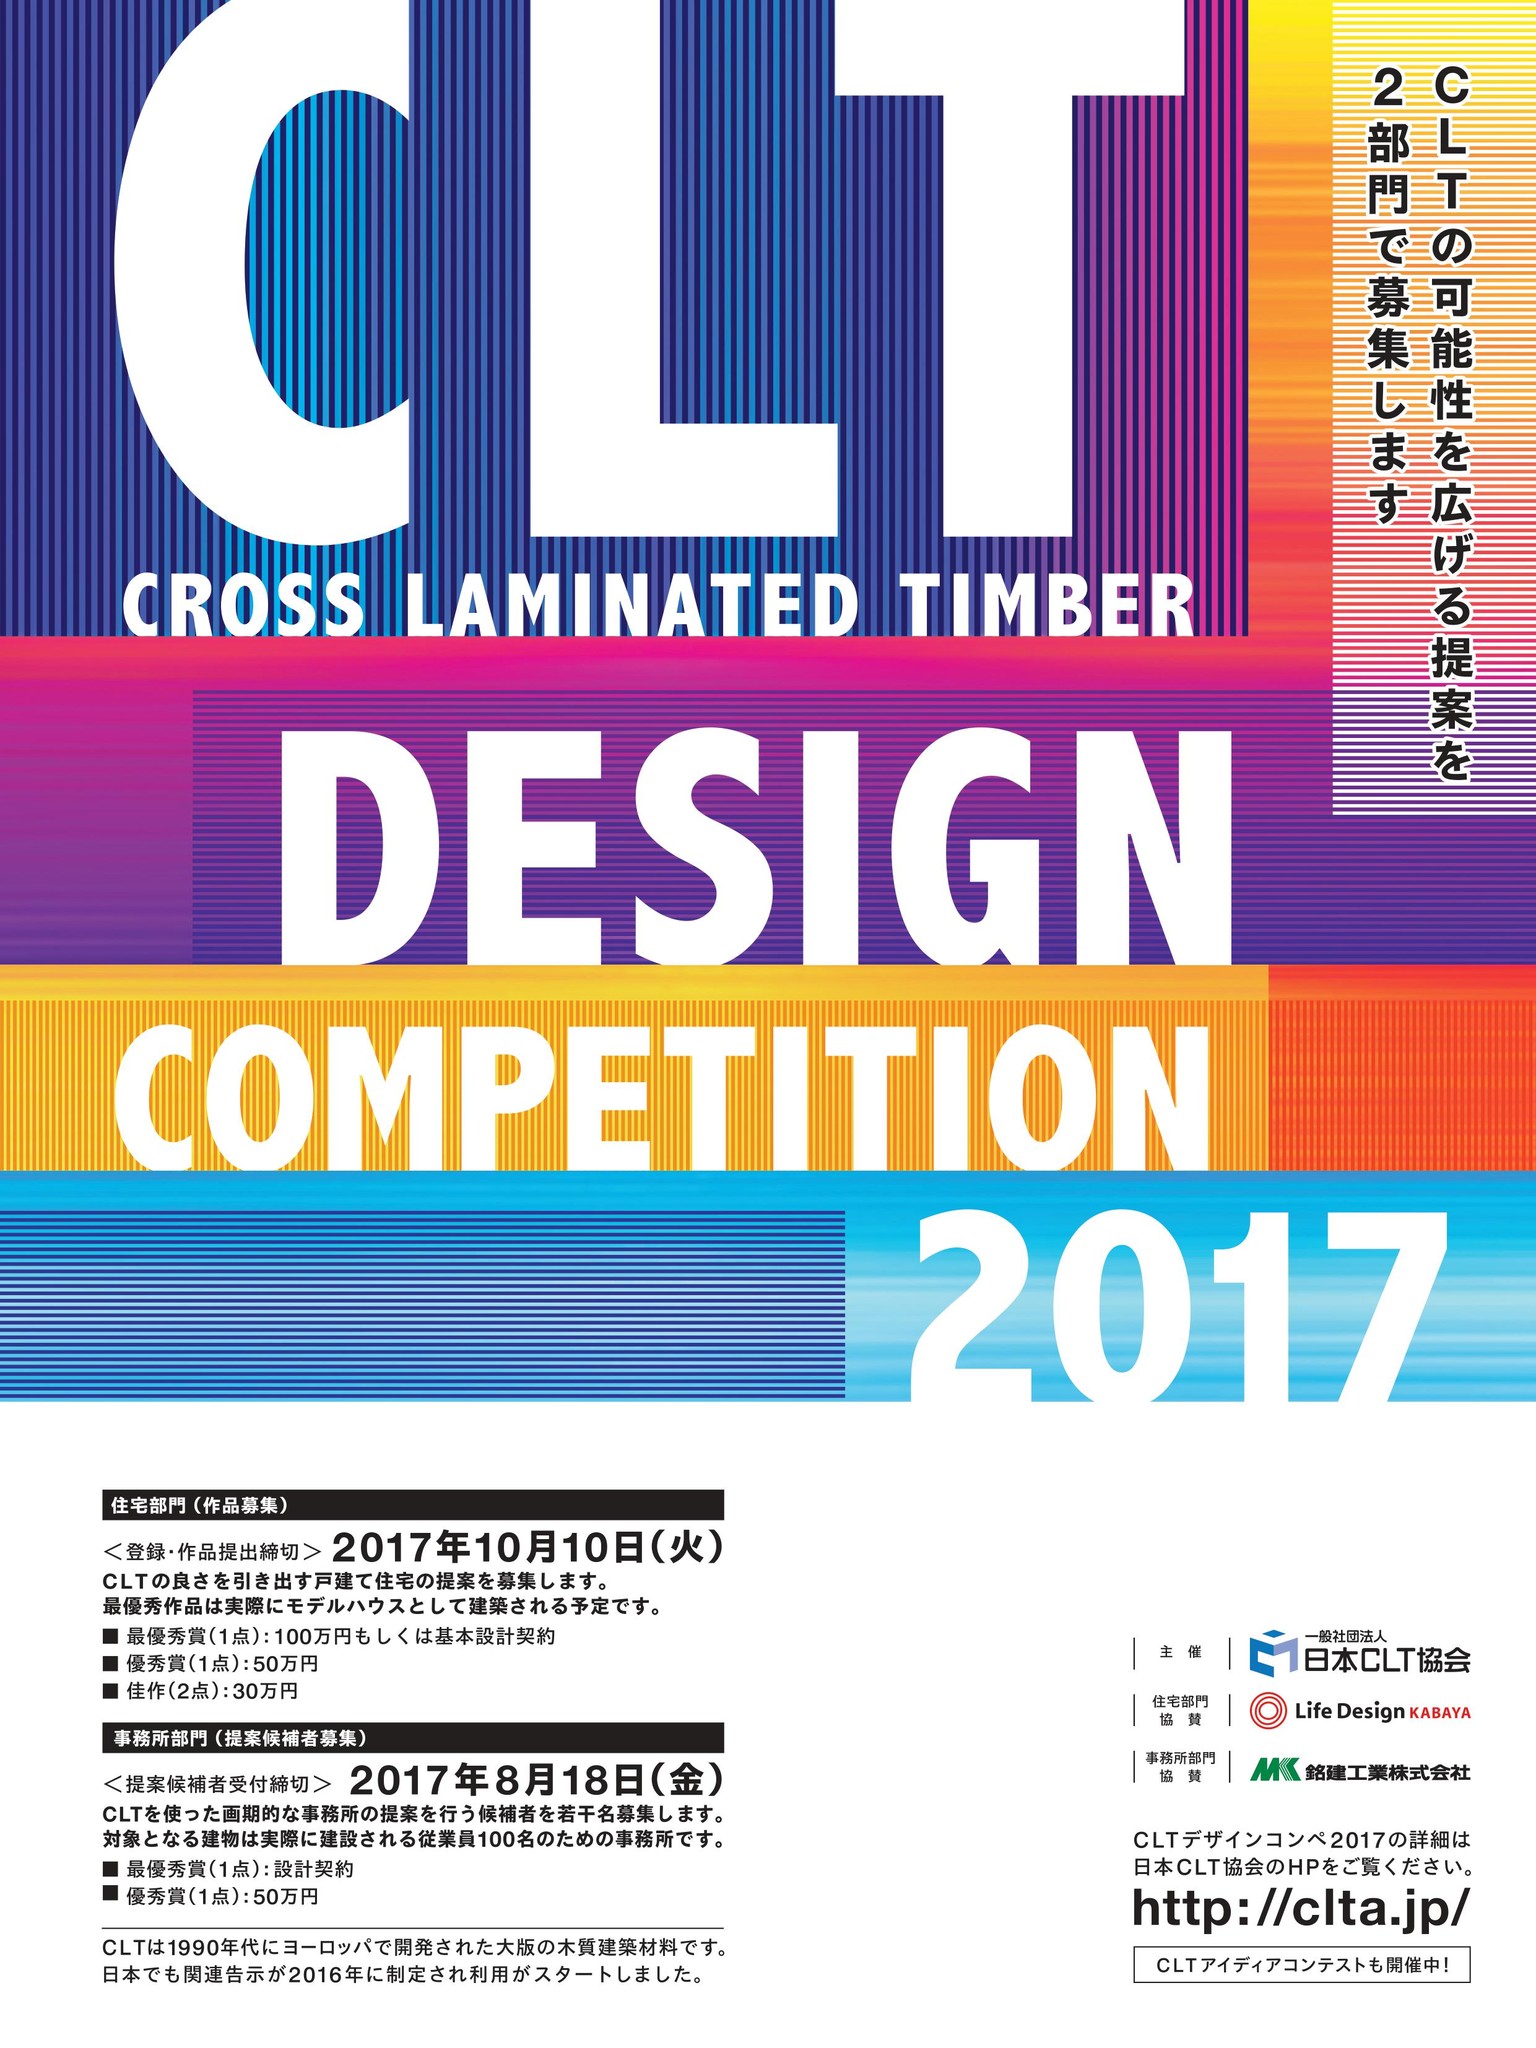 決まったの 日本clt協会主催 Cltデザインコンペ17最終審査 最優秀作品 ライフデザイン カバヤ株式会社のプレスリリース